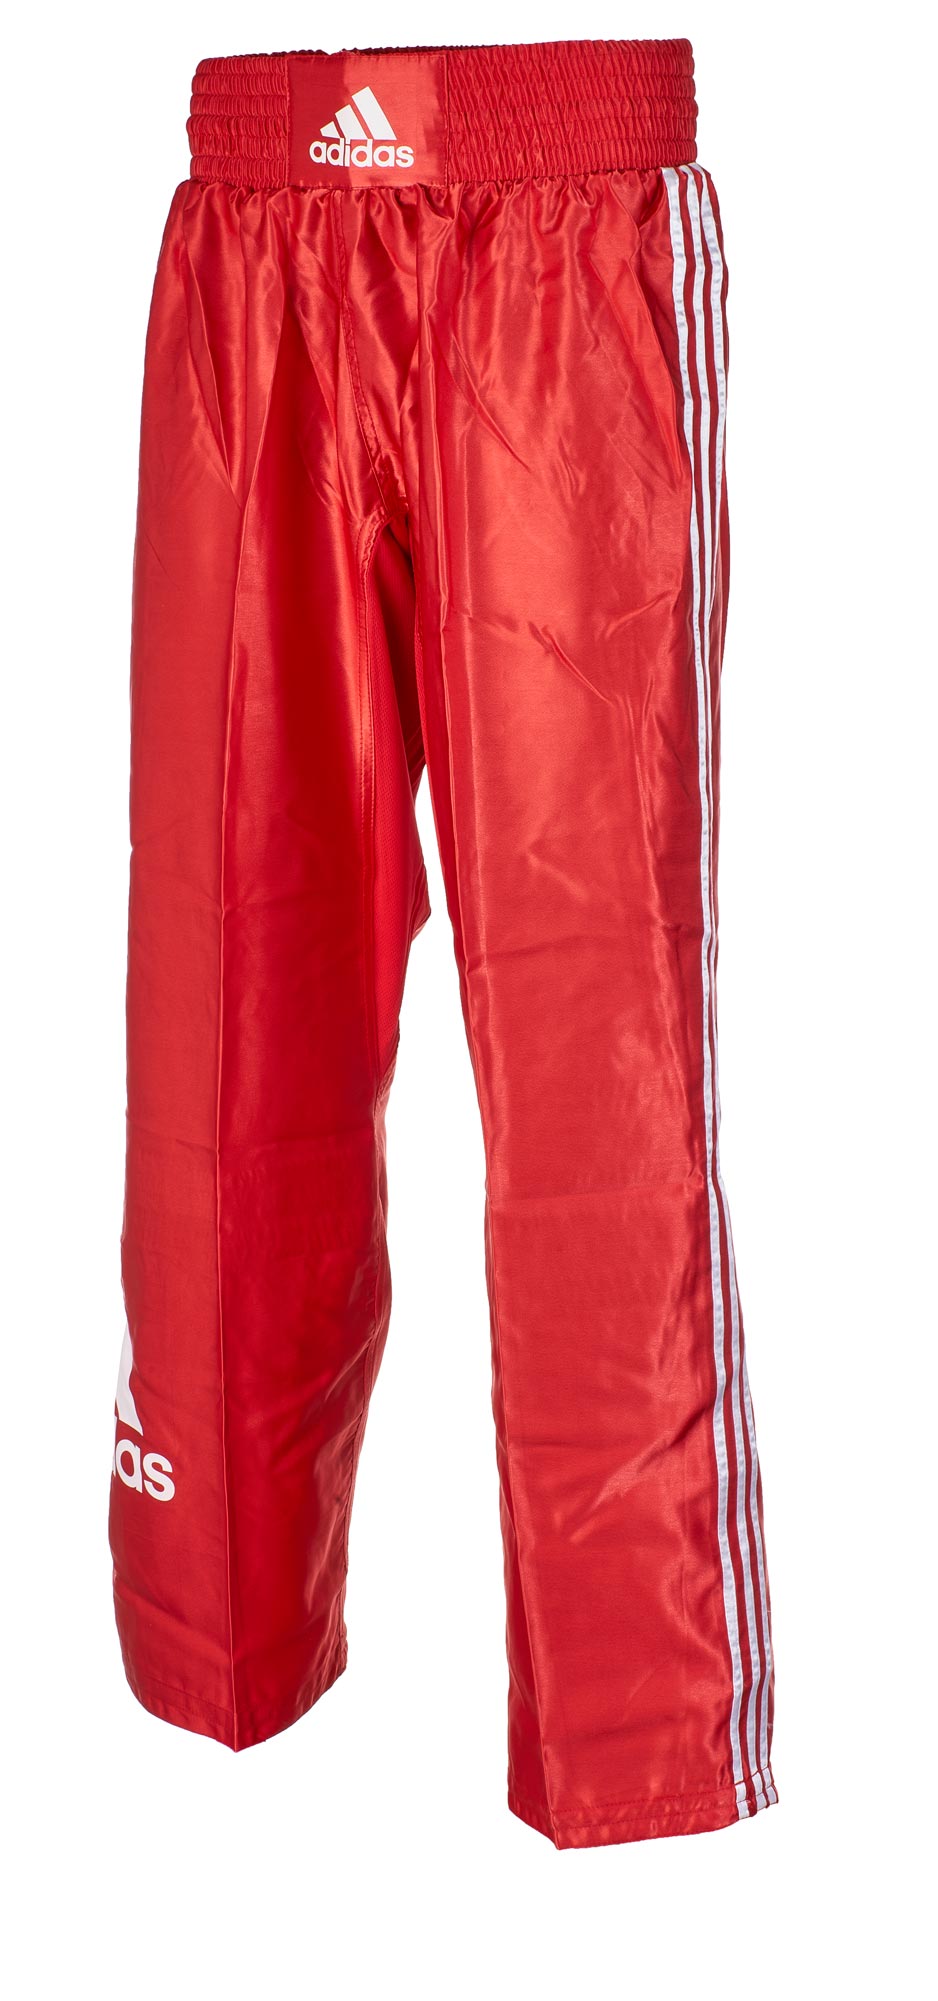 adidas kick boxing pants ADIPFC03, red/white